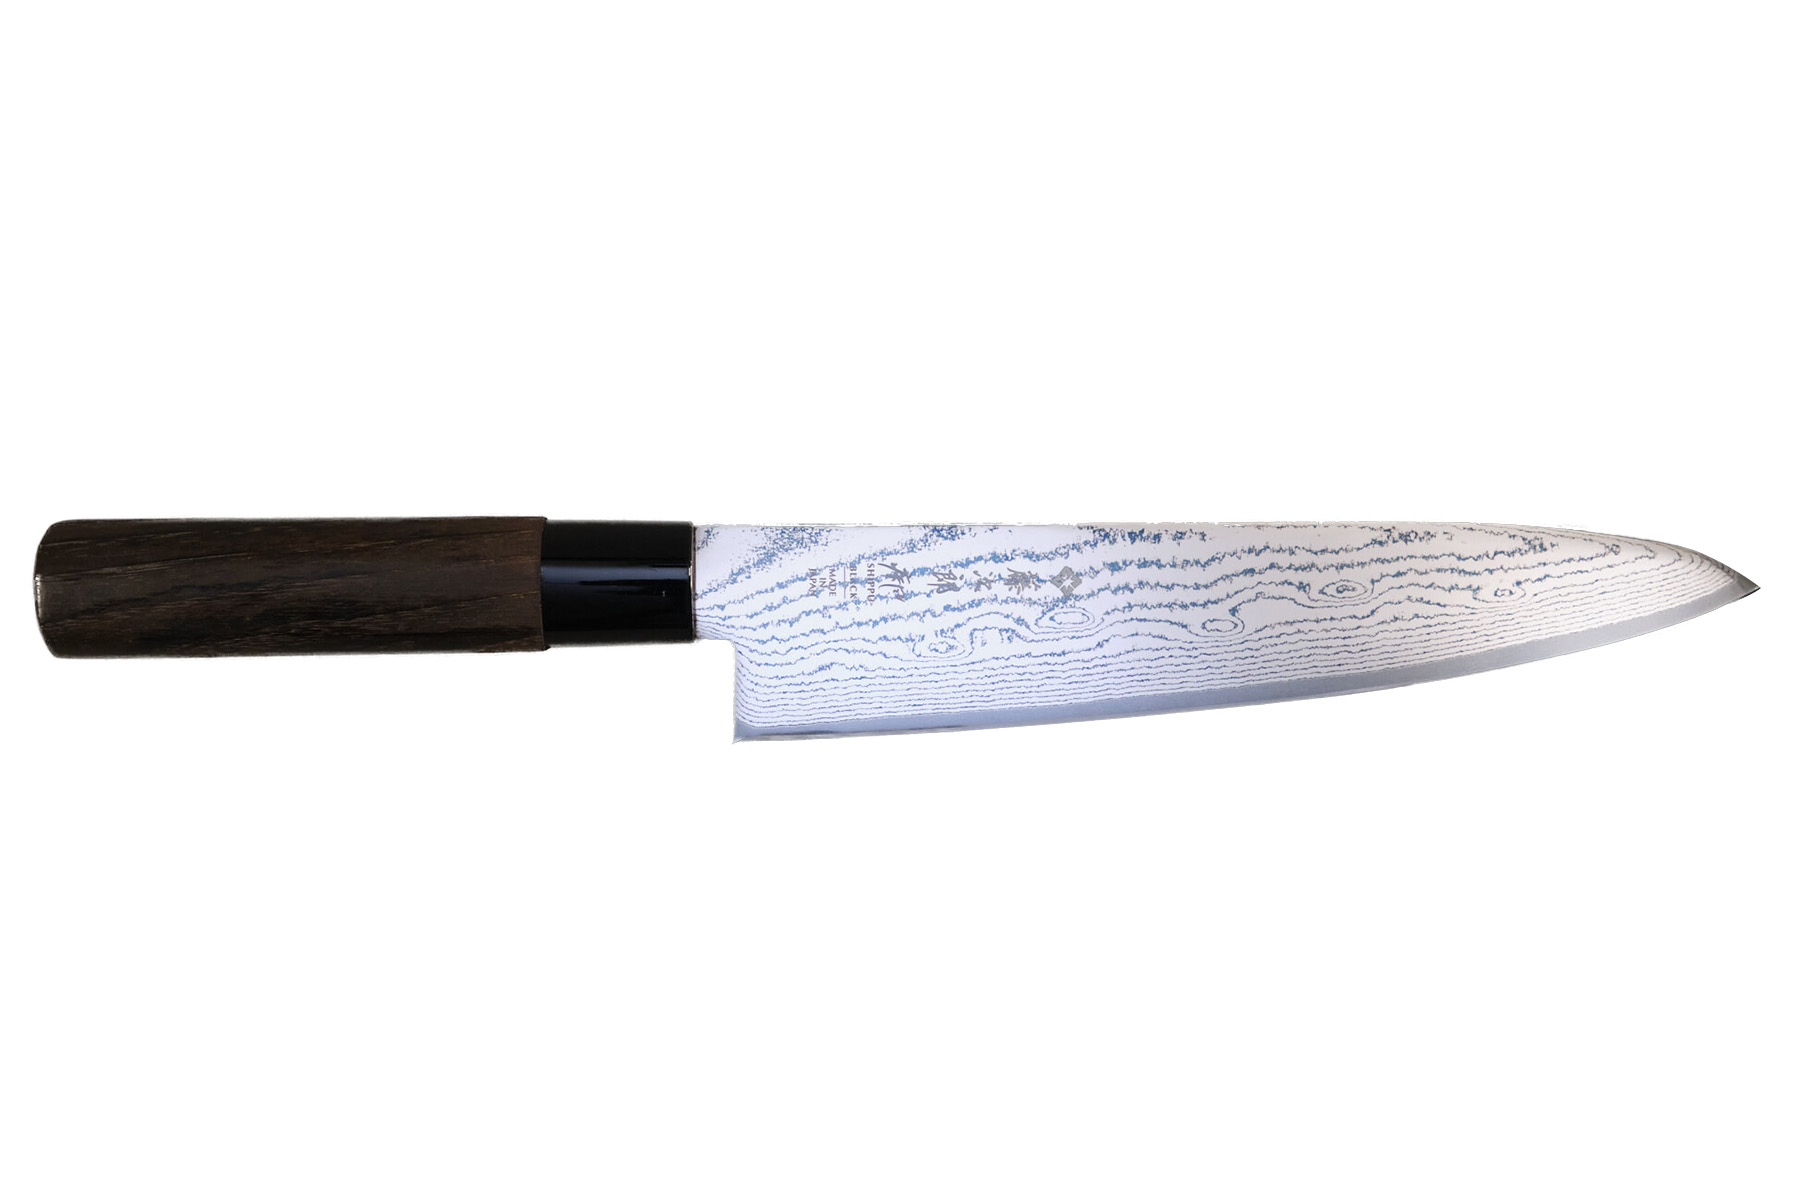 Mallette Chef HAUT DE GAMME couteaux japonais